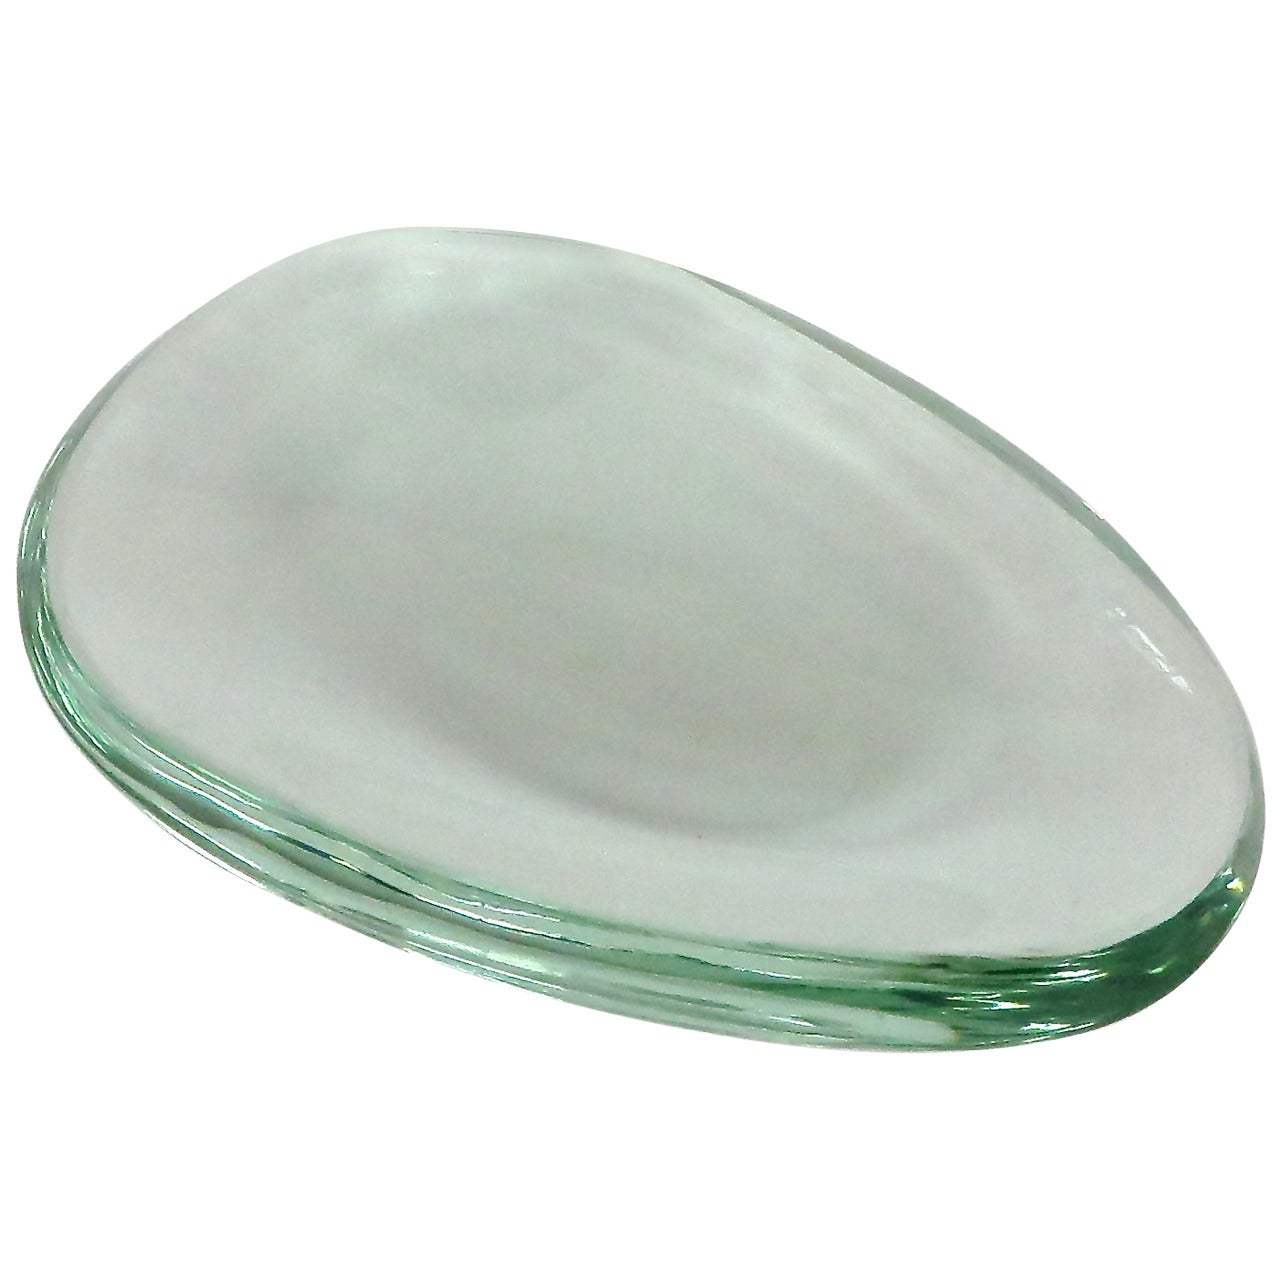 Italian Oval Glass Dish by Fontana Arte